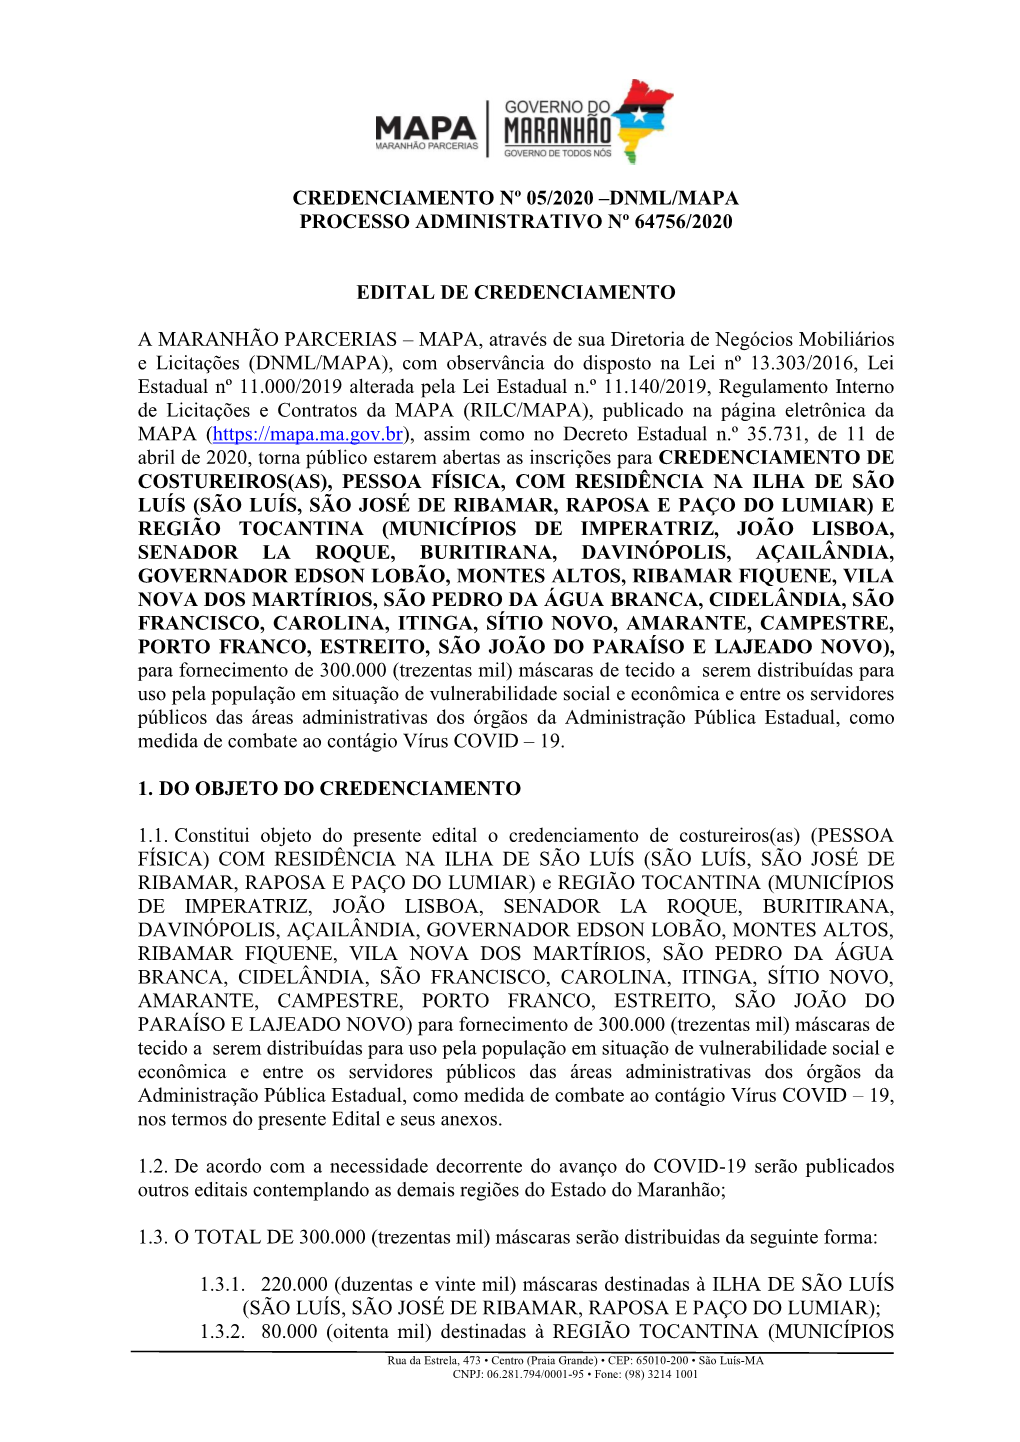 Anexo V Do Edital De Credenciamento Nº 05/2020